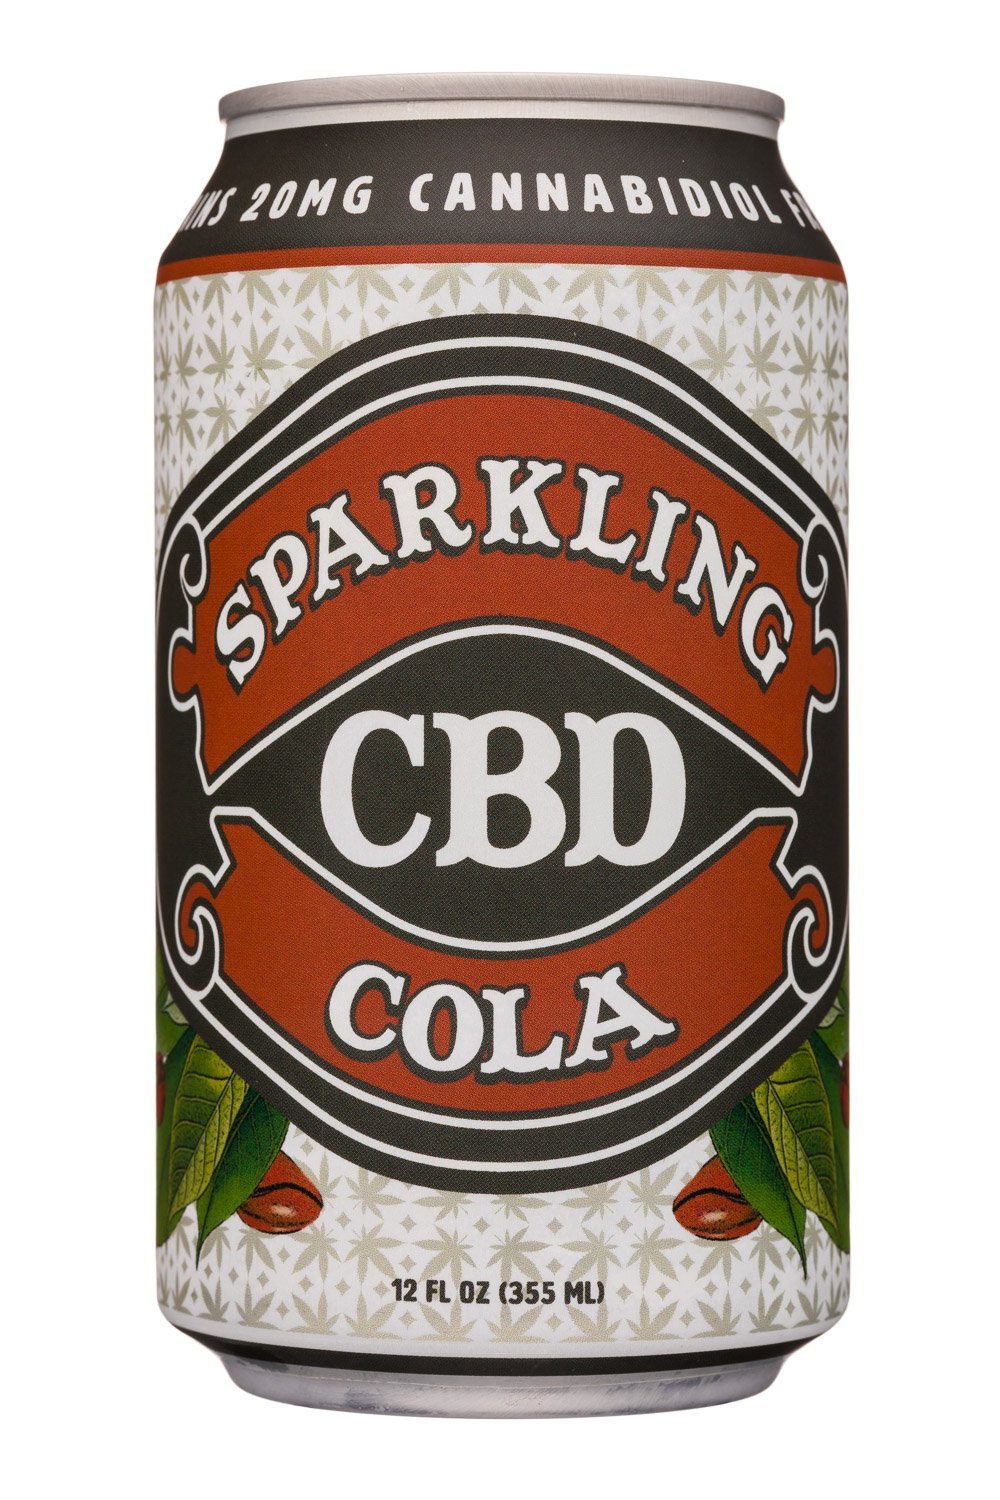 Sparkling Cbd Cola